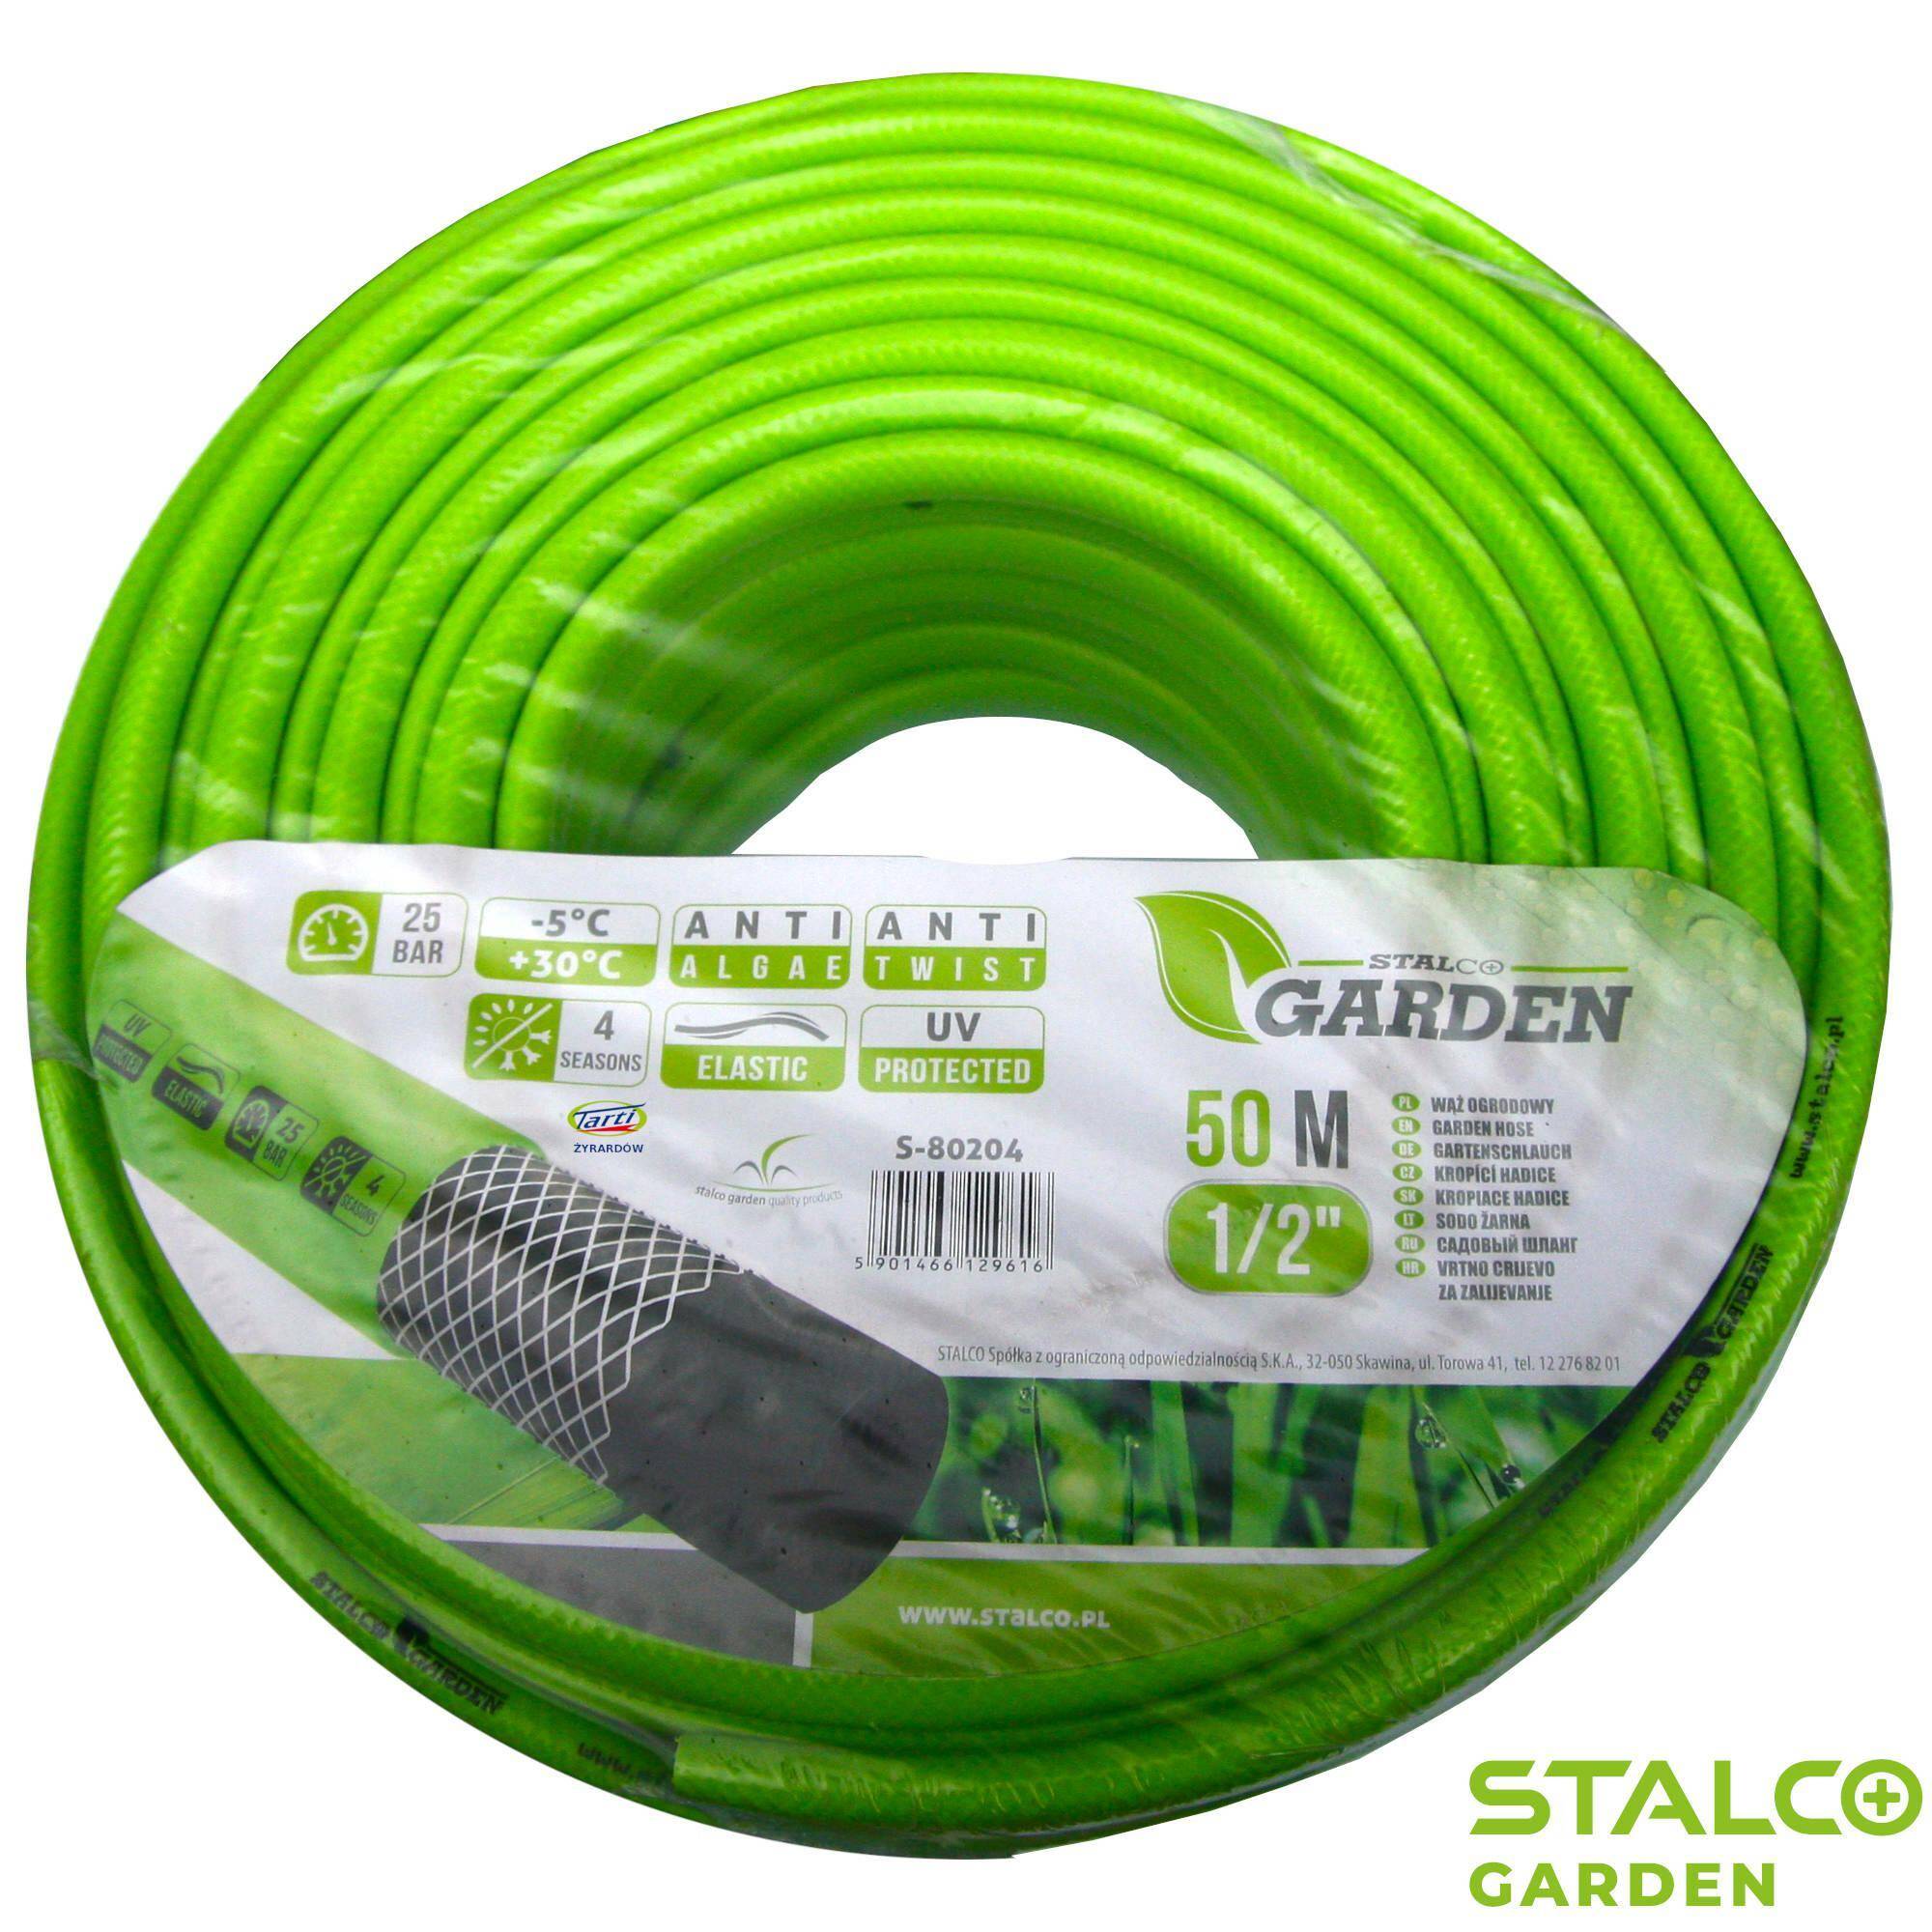 STALCO GARDEN s-80204 wąż ogrodowy 1/2